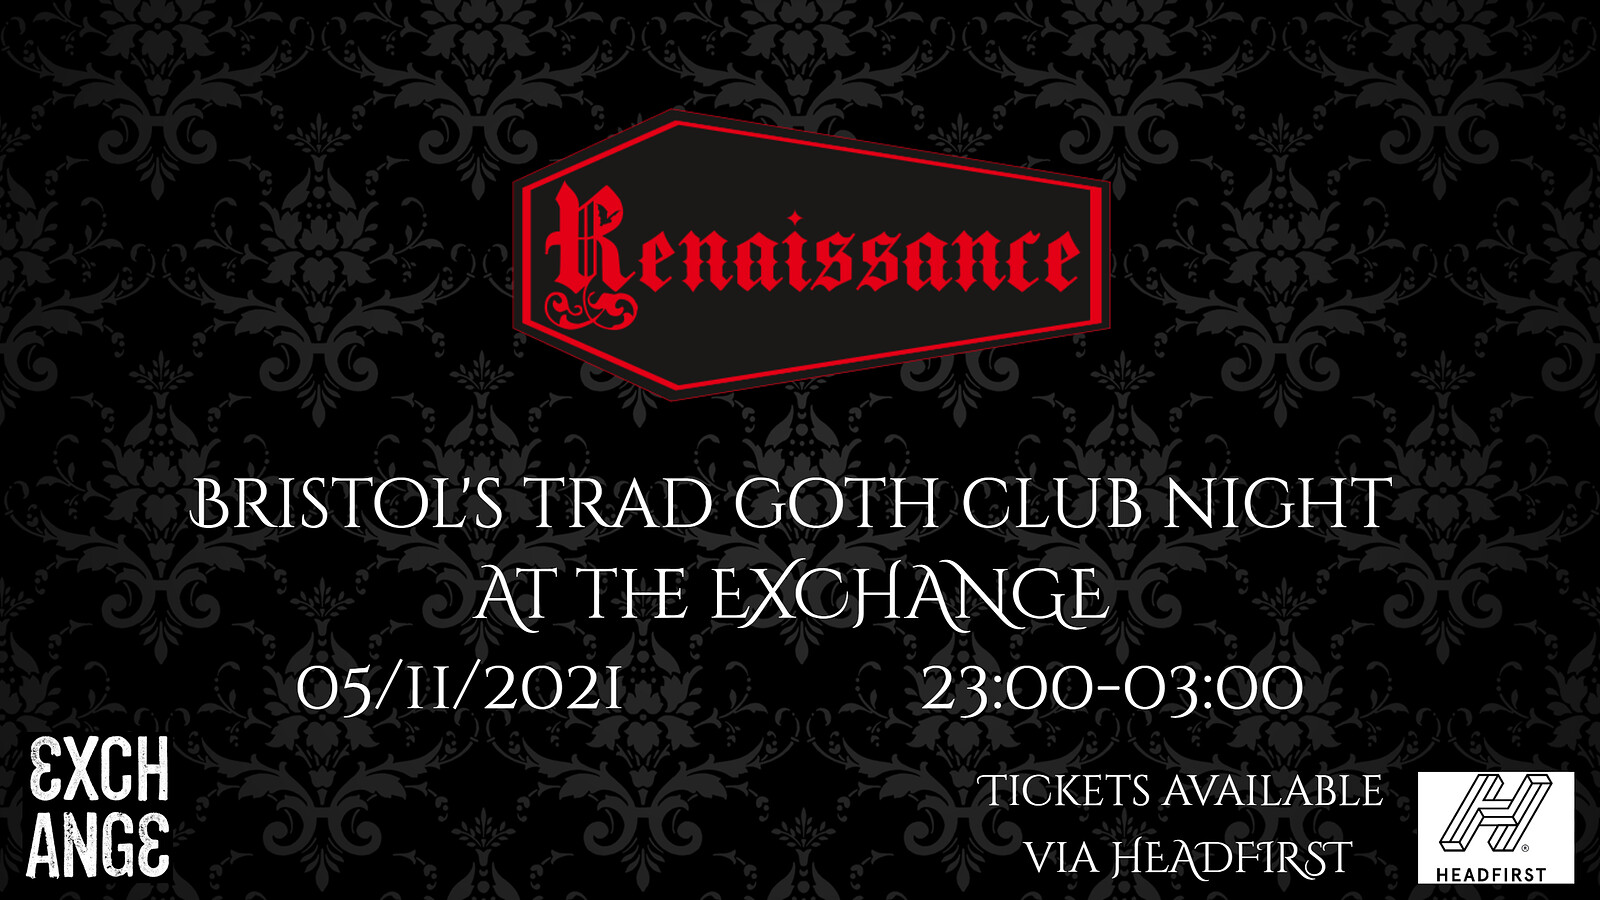 Renaissance - Bristol's Trad Goth night at Exchange